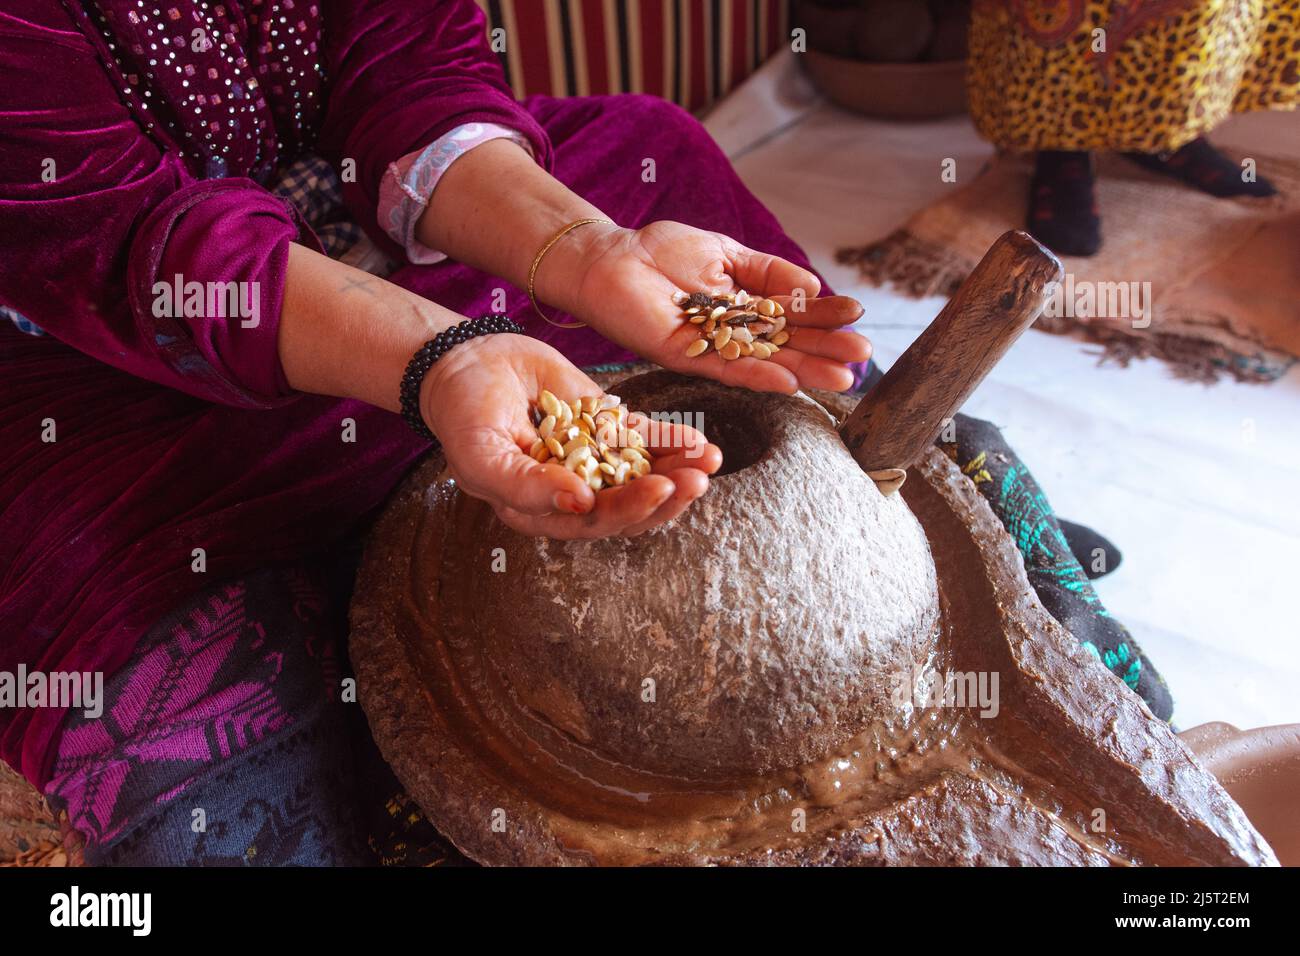 Femmes qui font de l'huile d'argan, Maroc. Tenant les graines avec ses mains. Des gens réels qui font des choses réelles. Afrique Banque D'Images